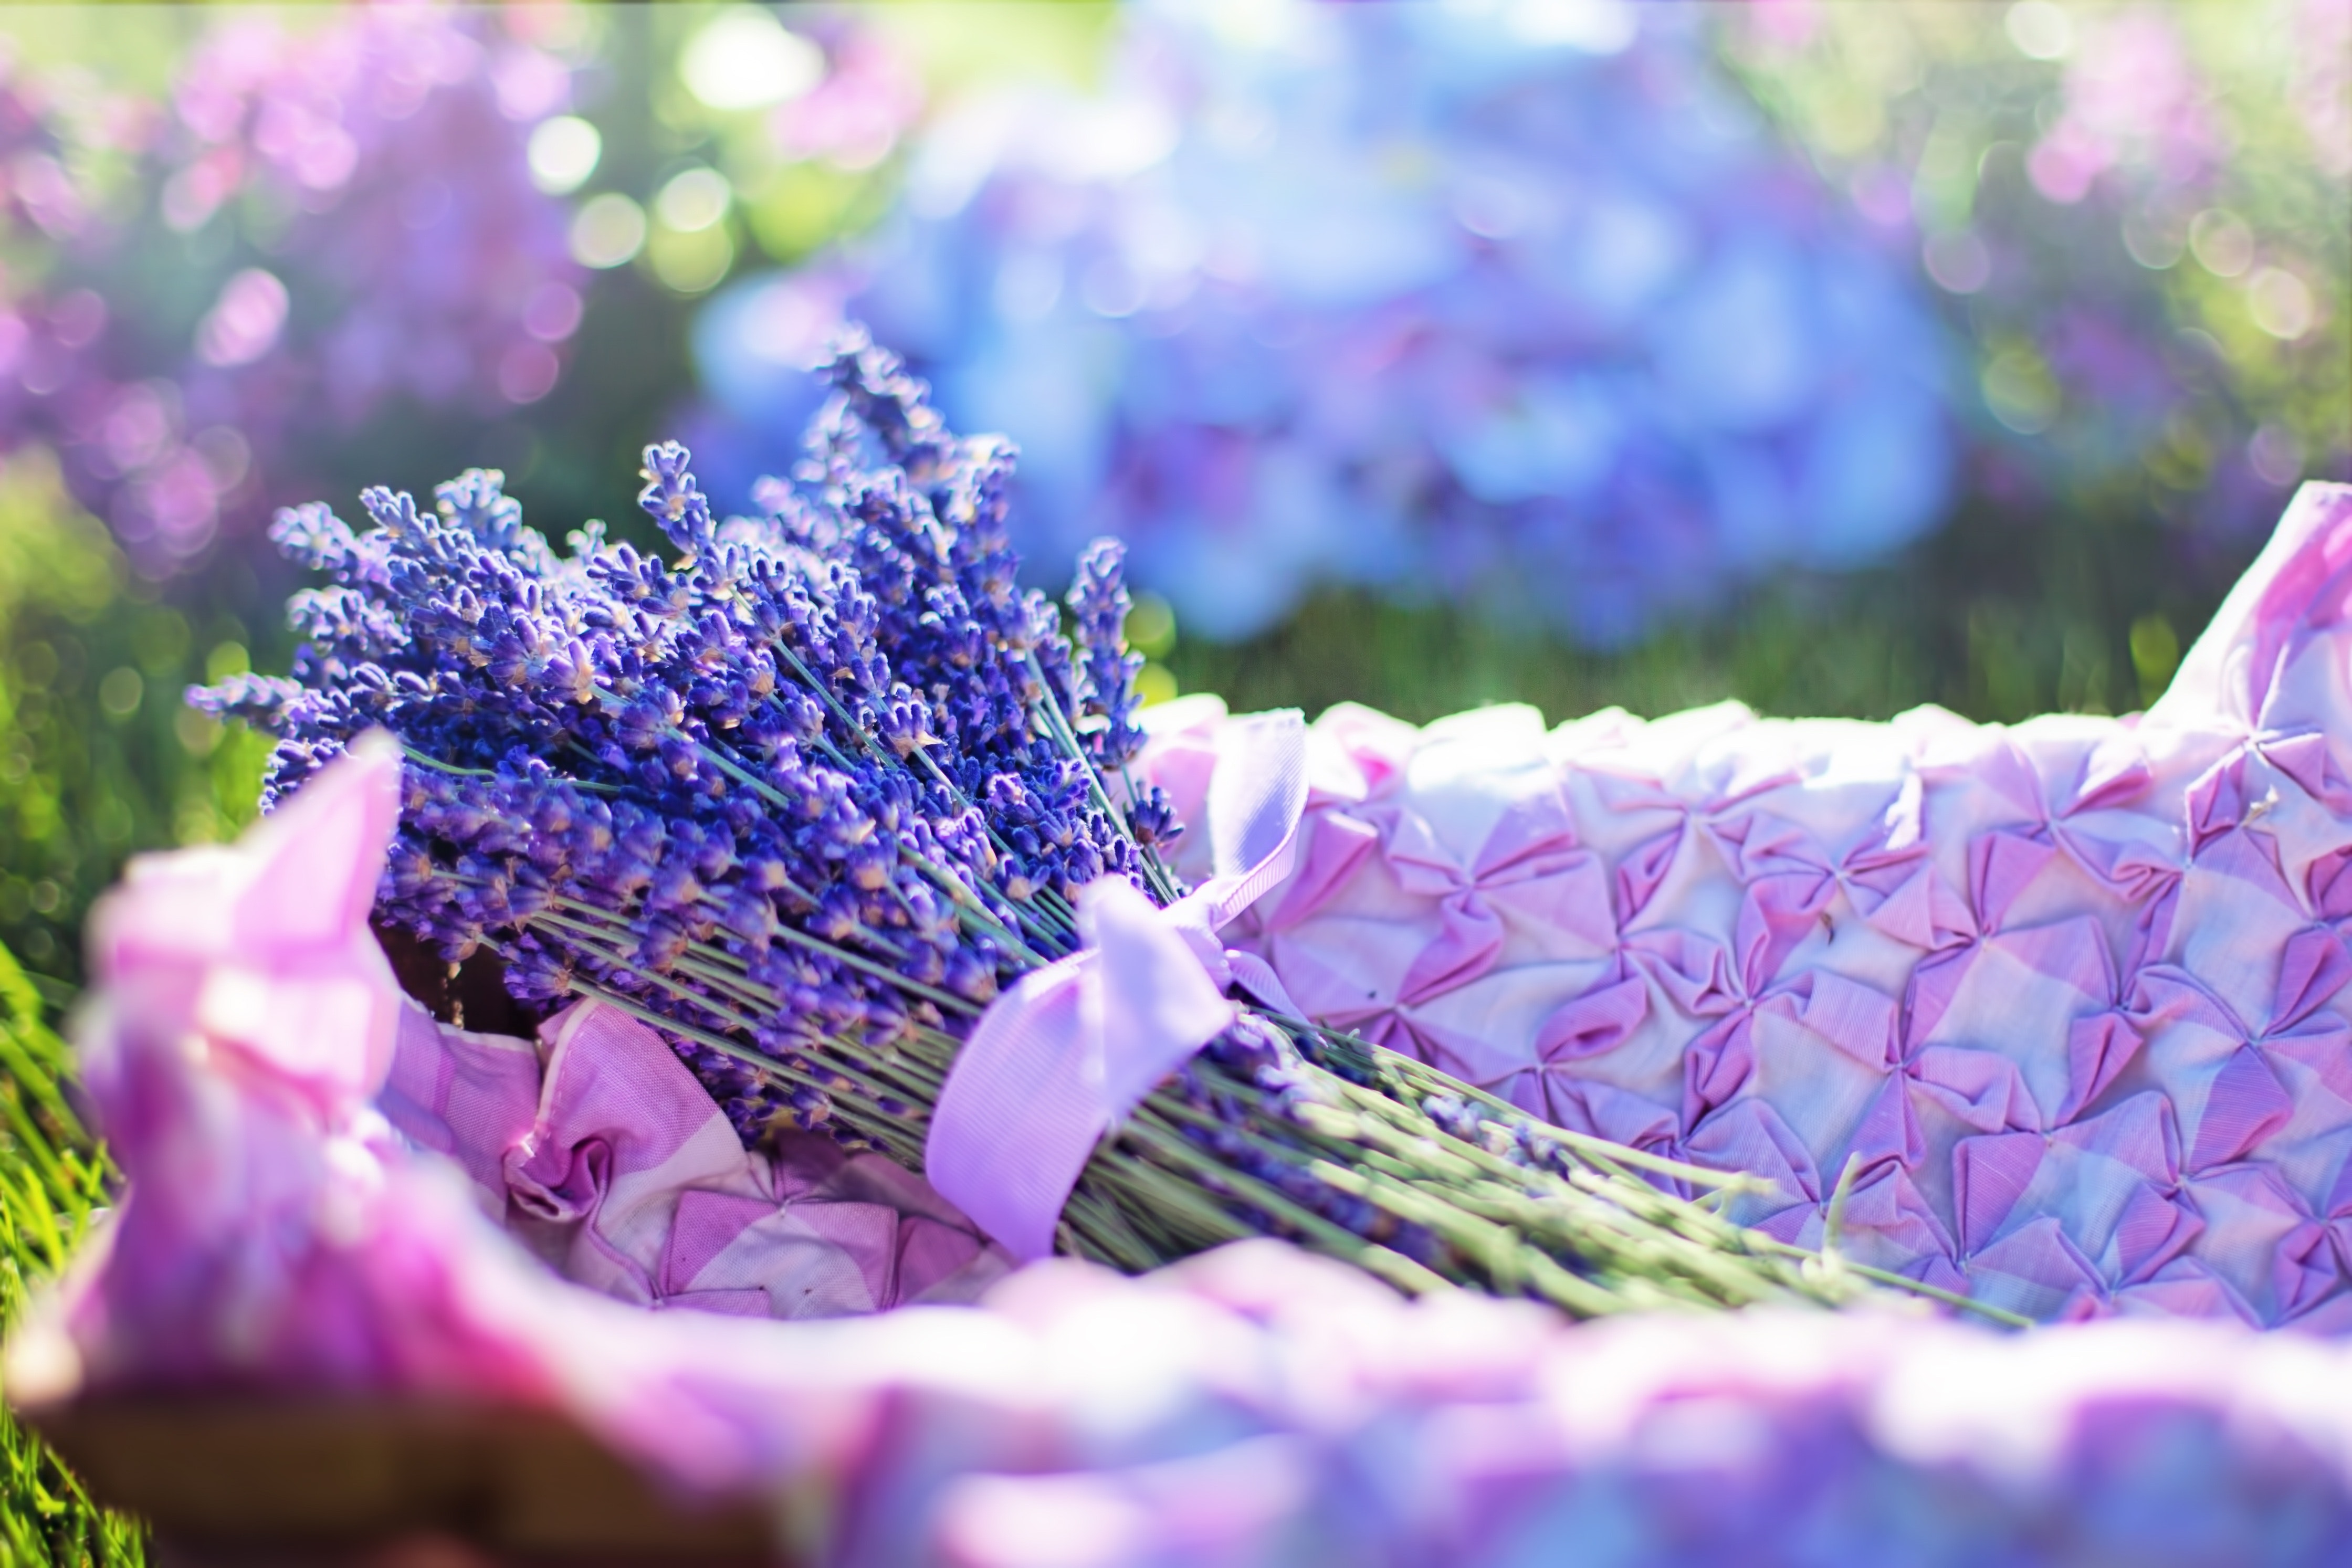 Tổng hợp hình ảnh hoa lavender khô đẹp nhất – Loài hoa may mắn, hạnh phúc - [Kích thước hình ảnh: 4480x2987 px]